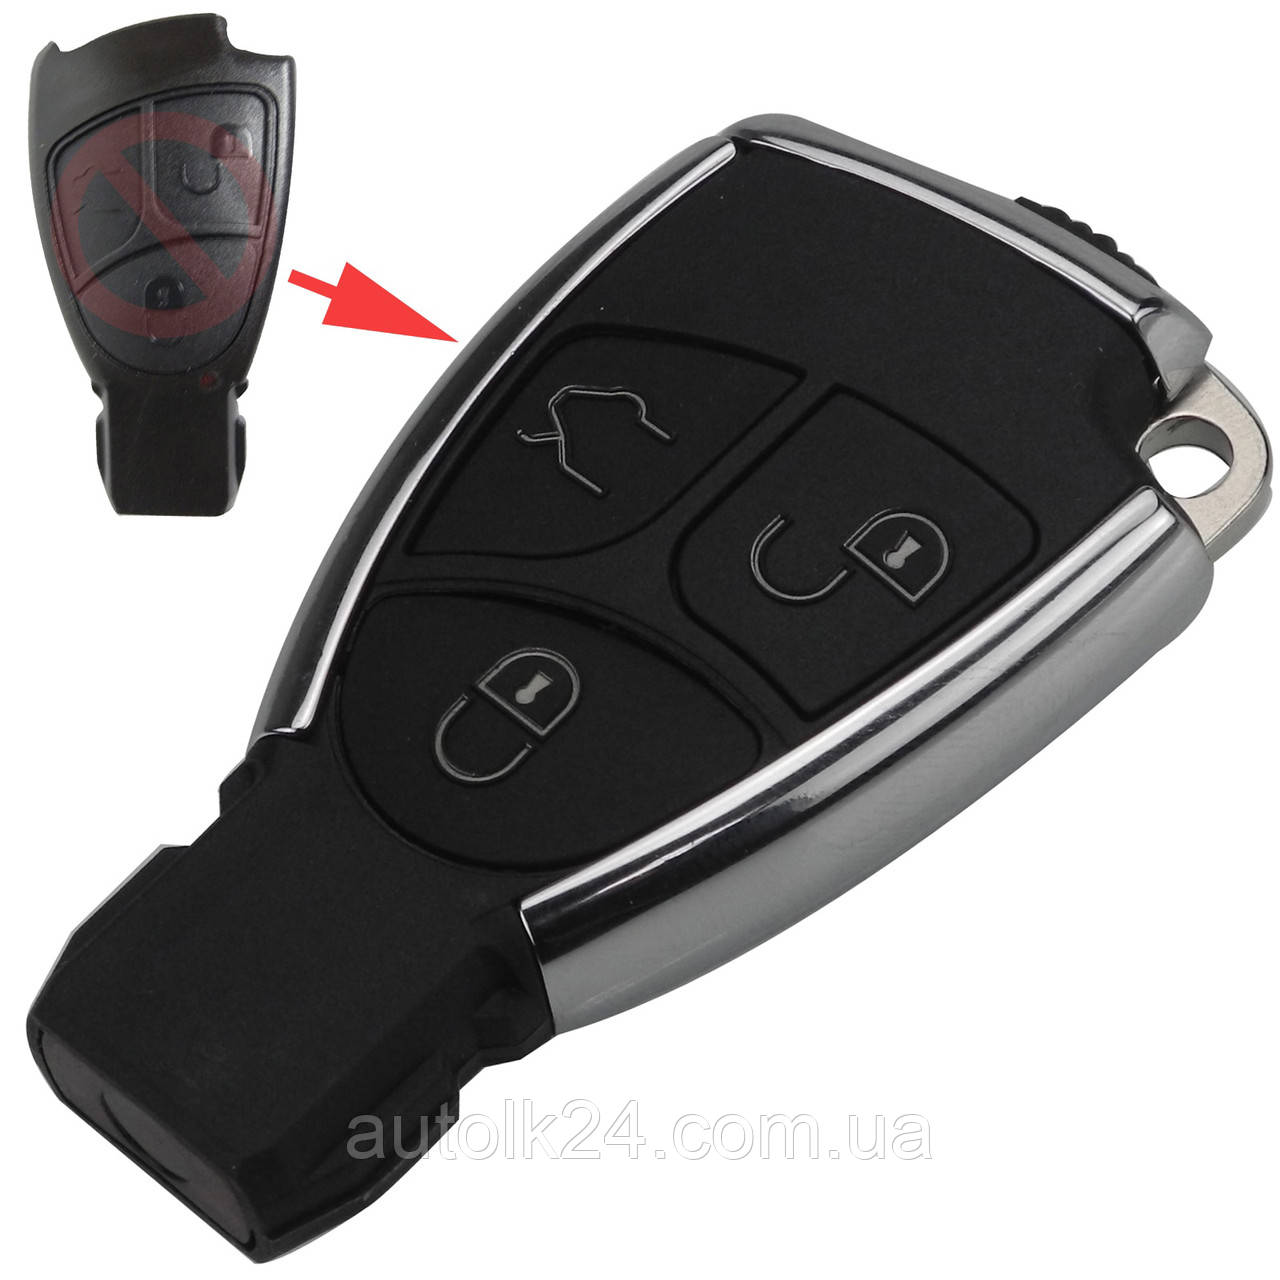 Корпус смарт ключа 3 кнопки для Mercedes Benz (Хром)